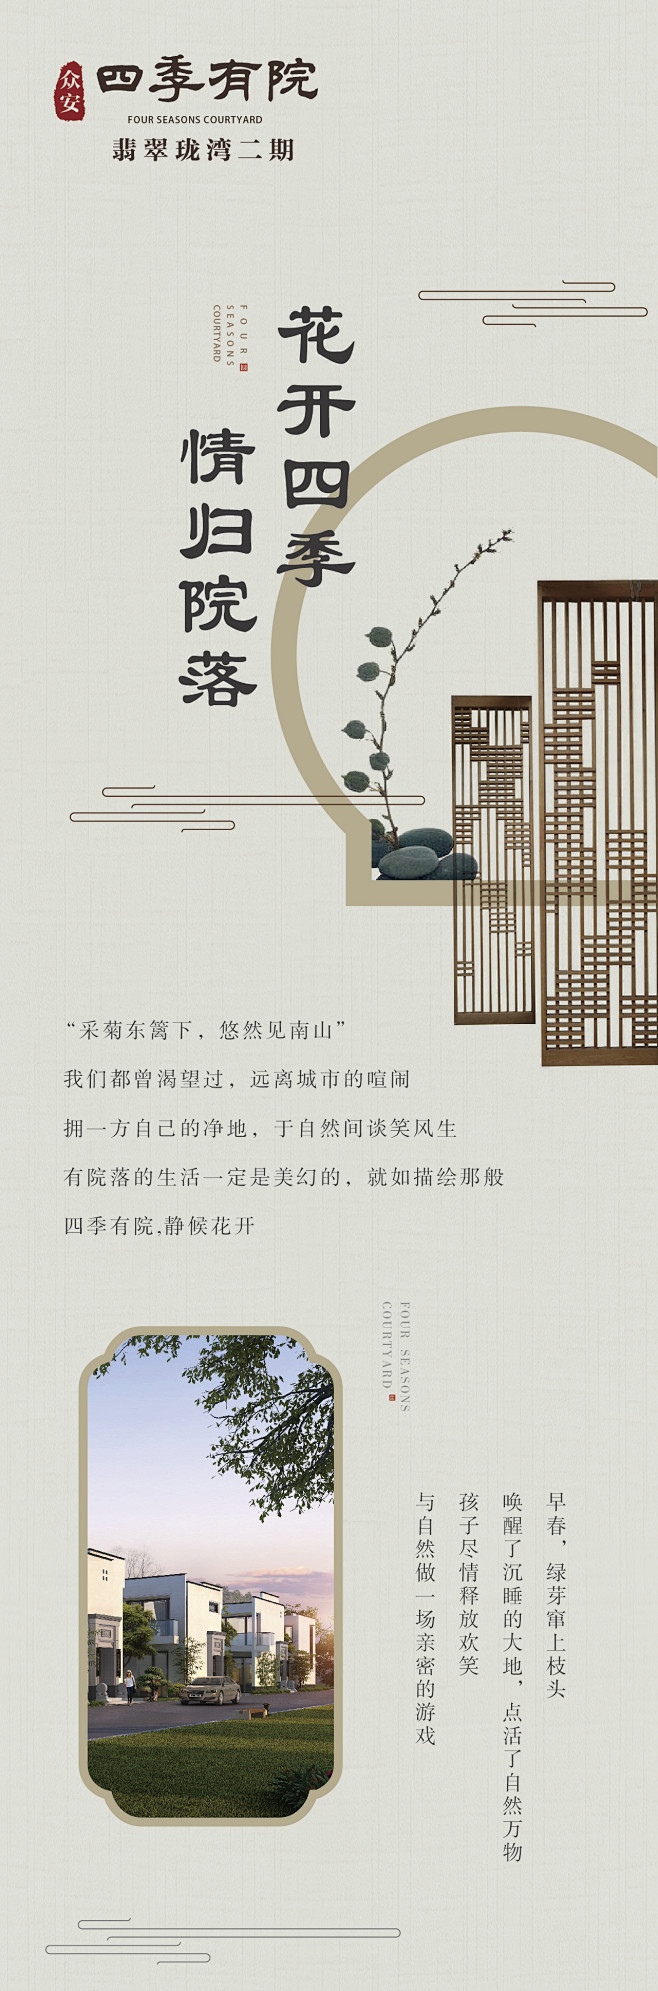 中式风格素材、海报